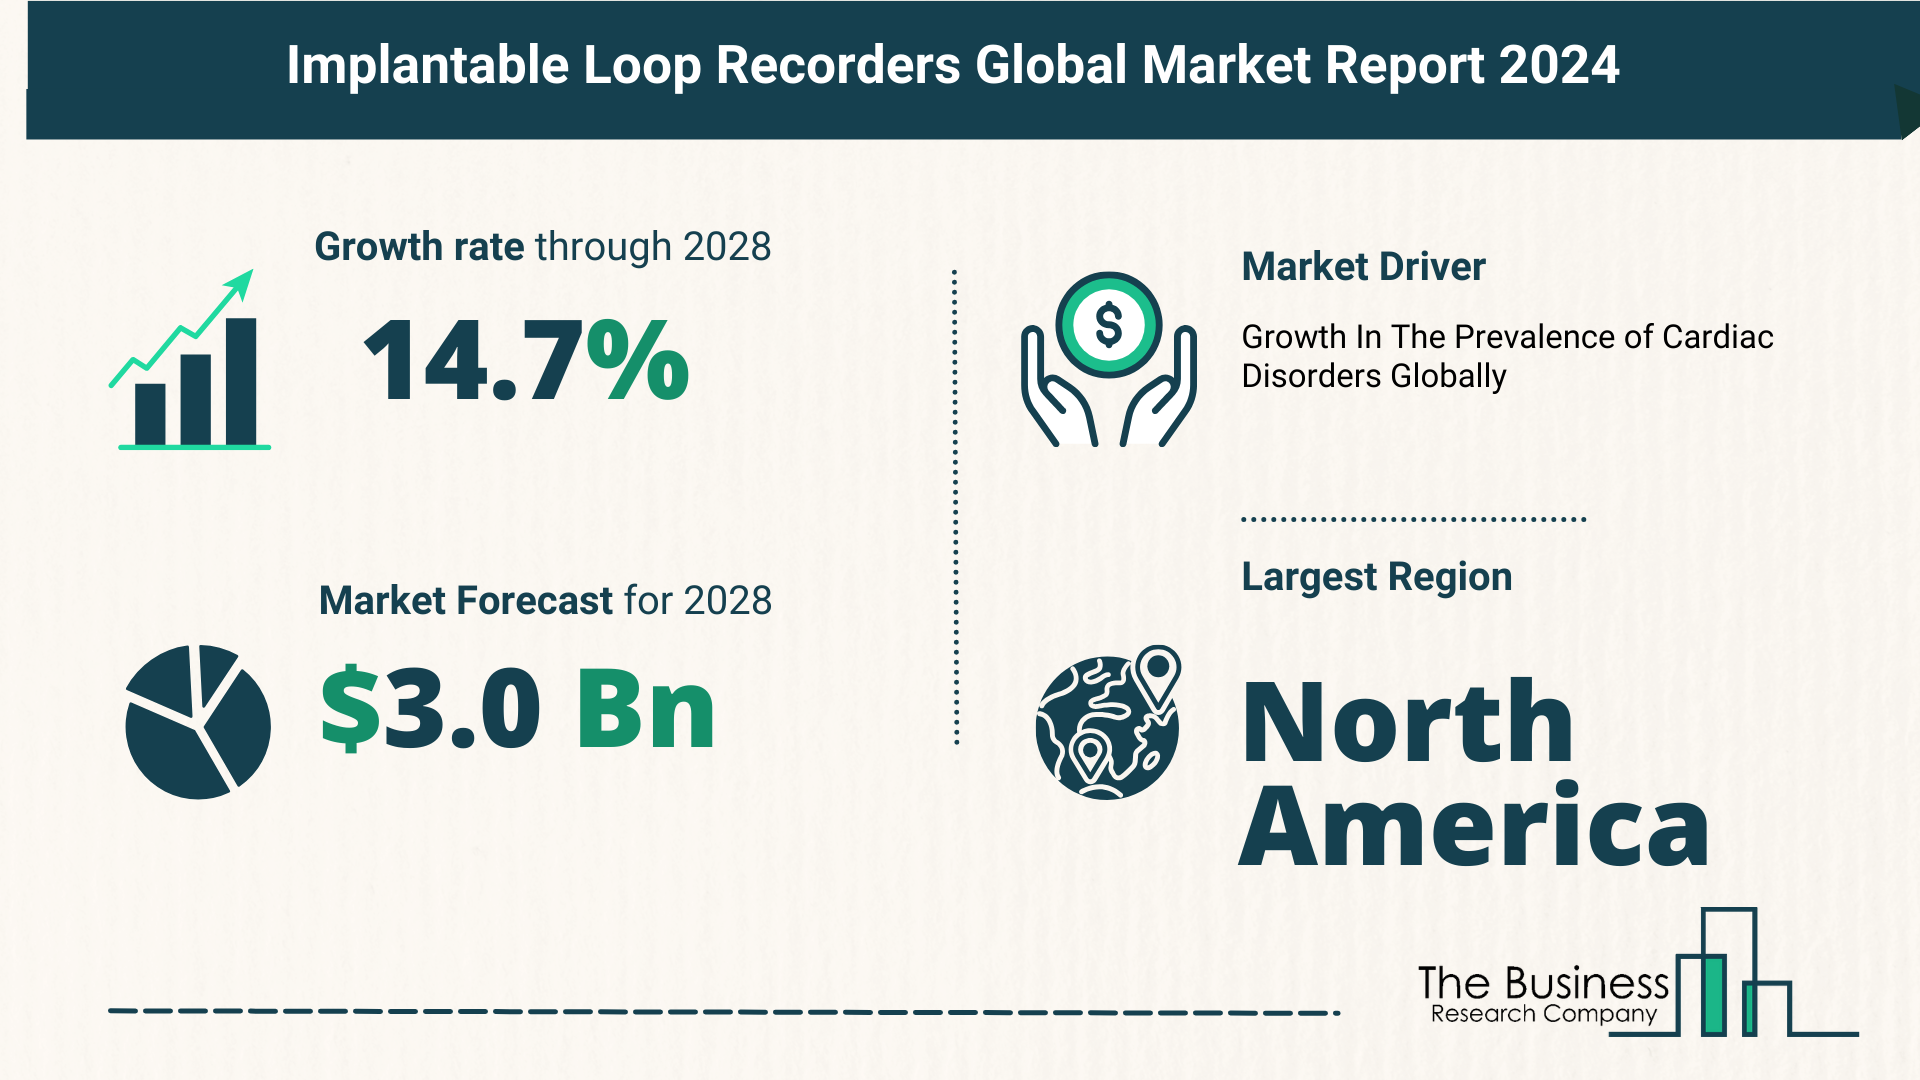 Global Implantable Loop Recorders Market